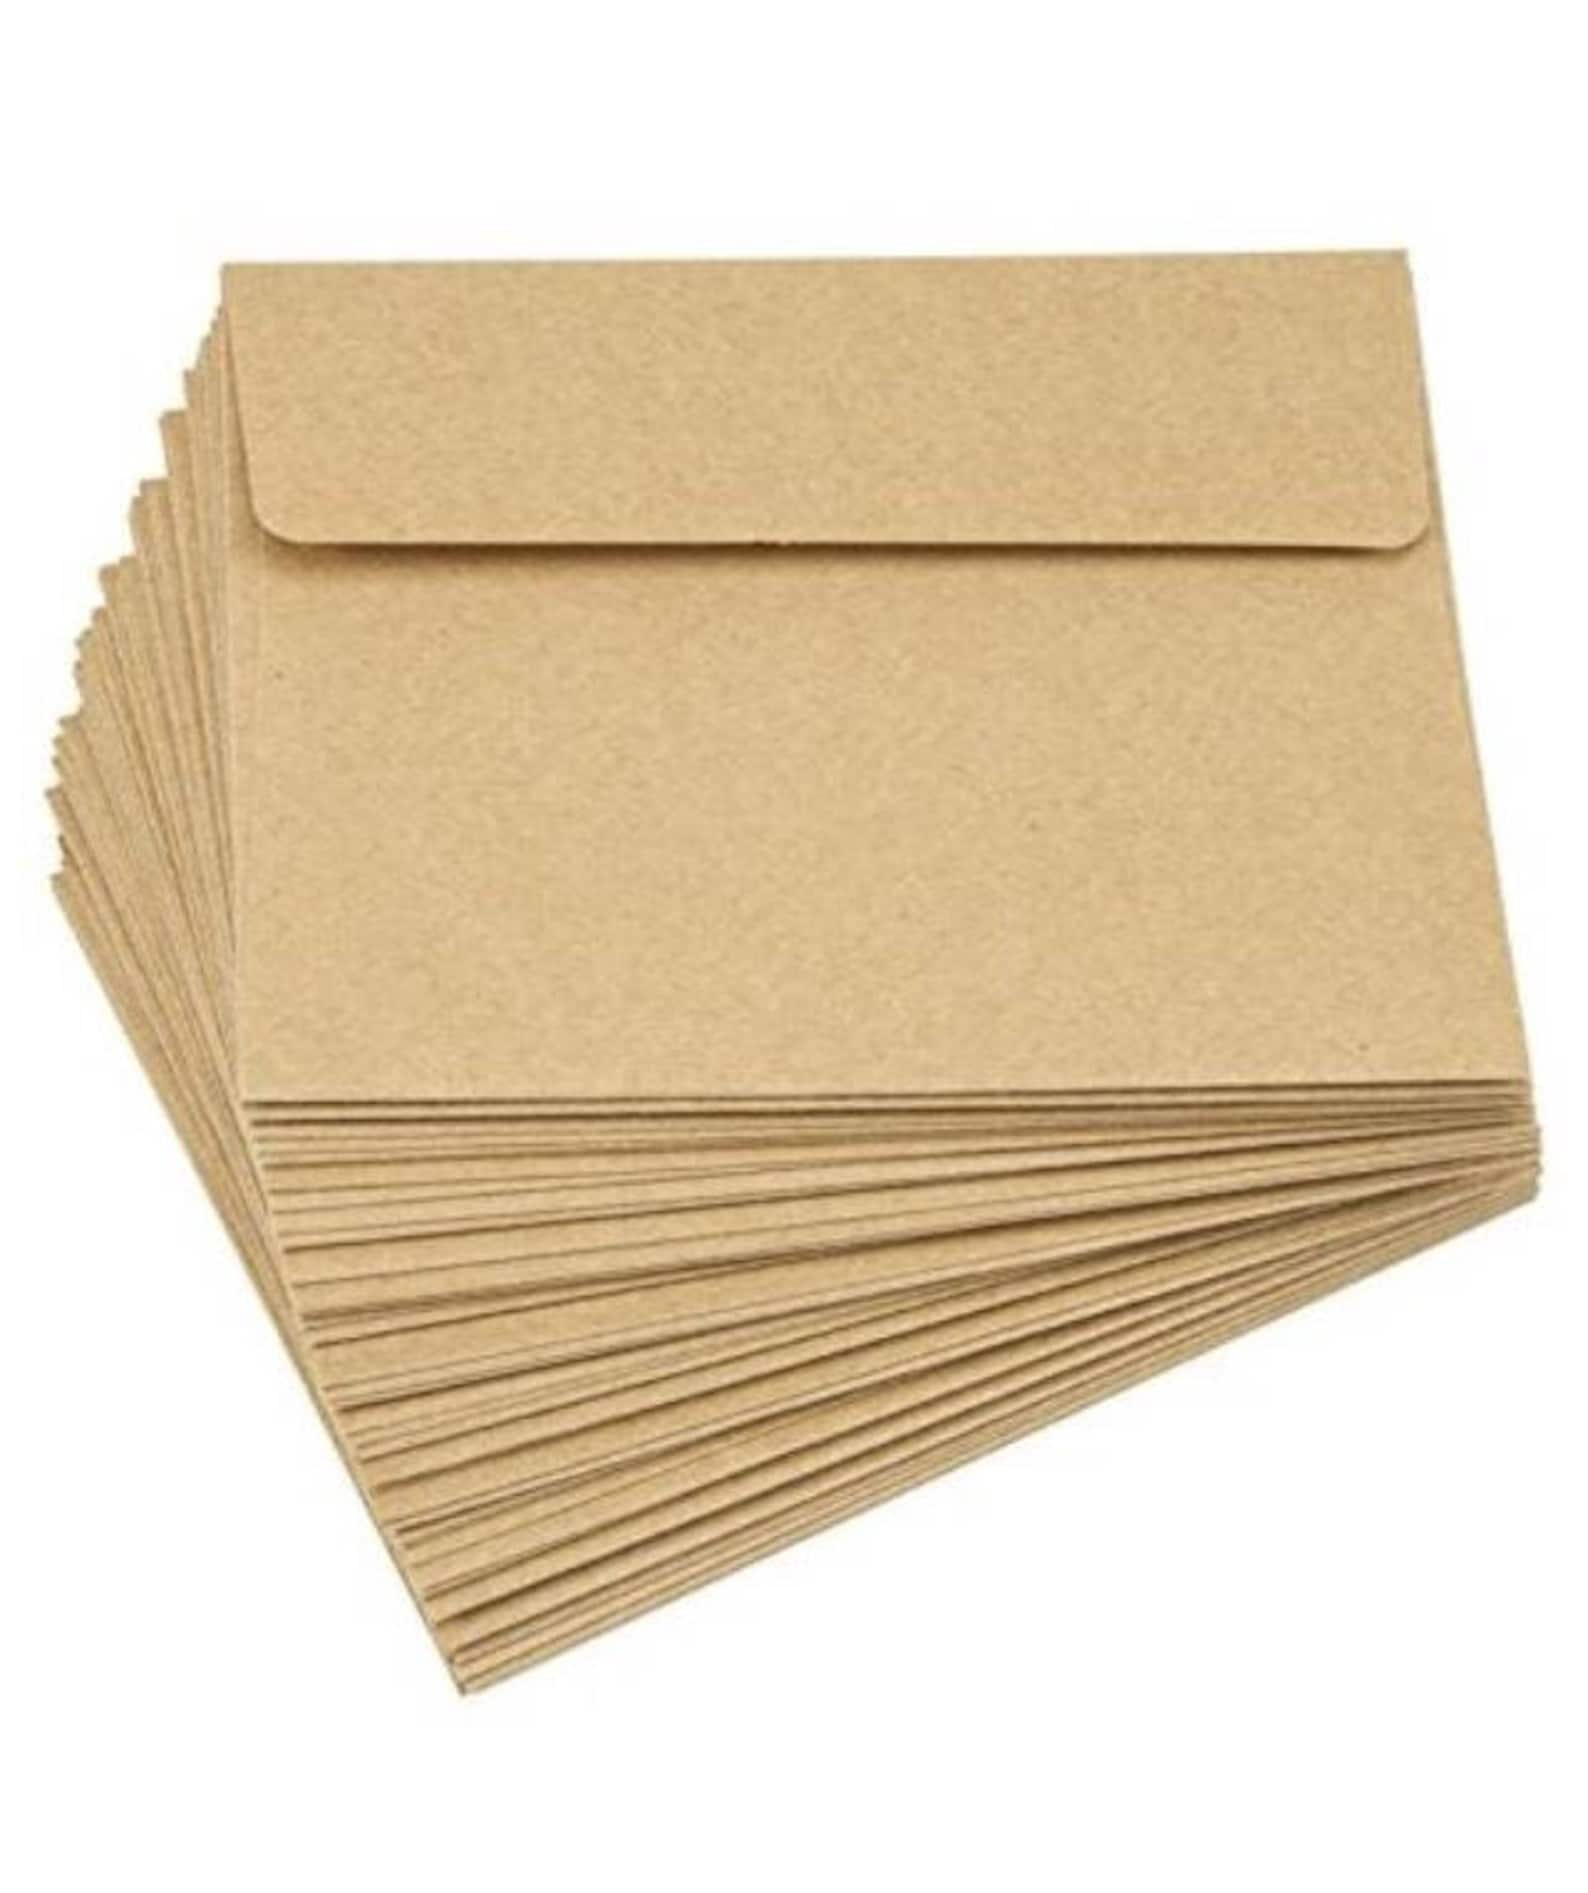 50CT A7 Envelopes A2 Envelopes Kraft Envelopes kraft | Etsy